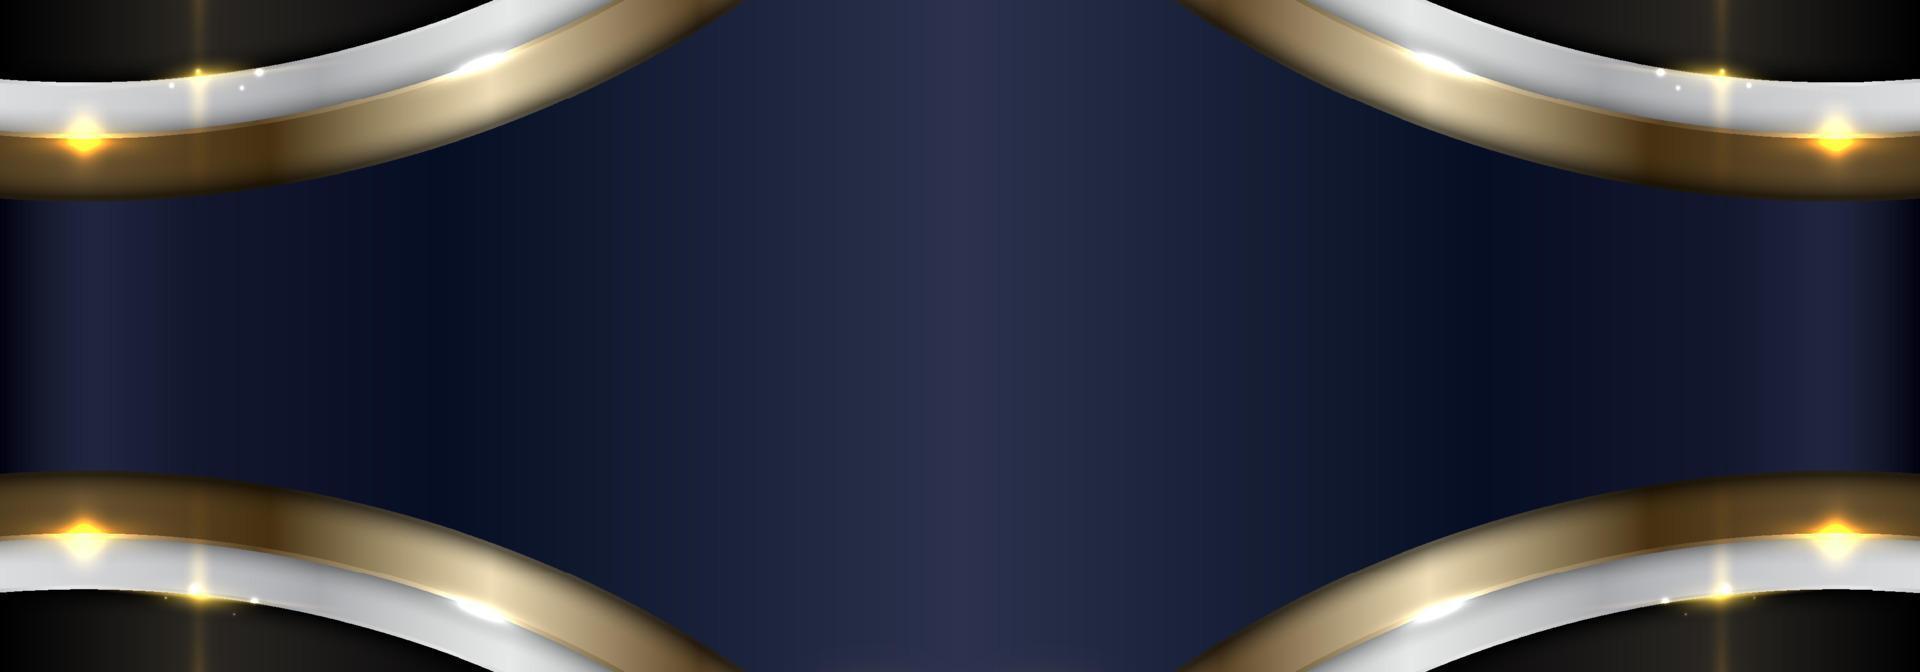 banner web abstrakte elegante blaue, weiße, goldene metallisch geschwungene formschicht auf schwarzem hintergrund vektor